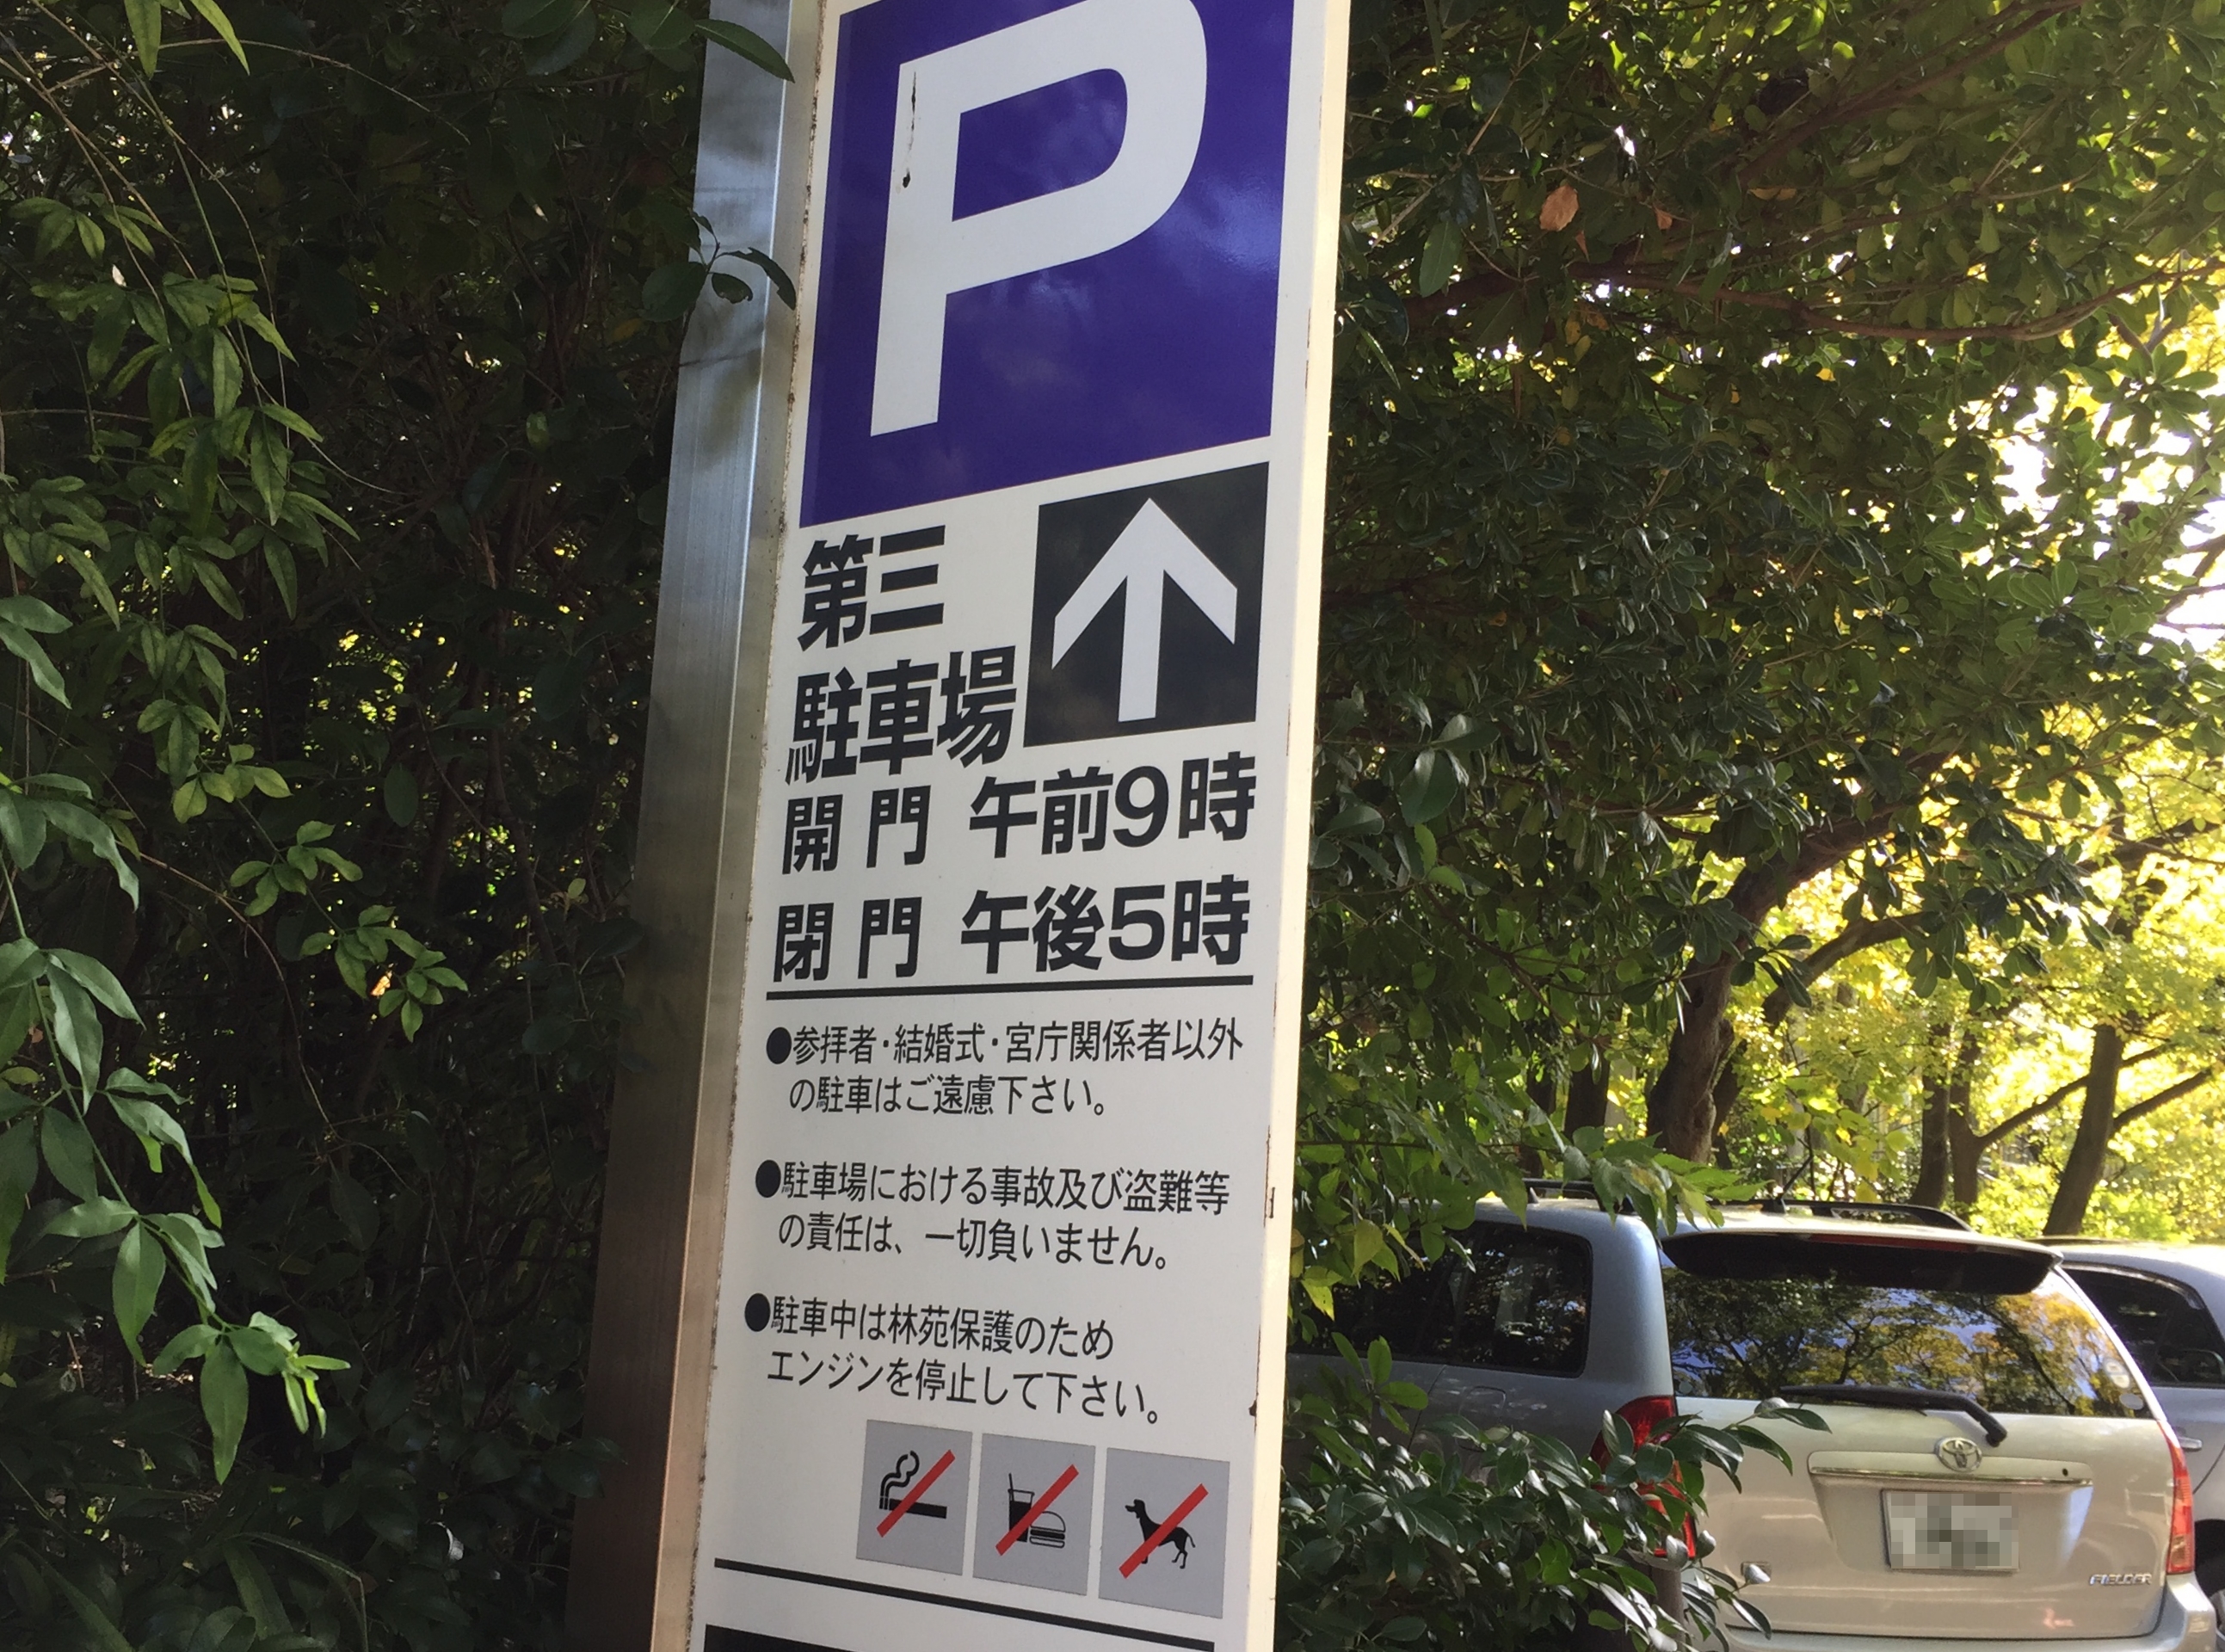 atsuta-jingu-parking